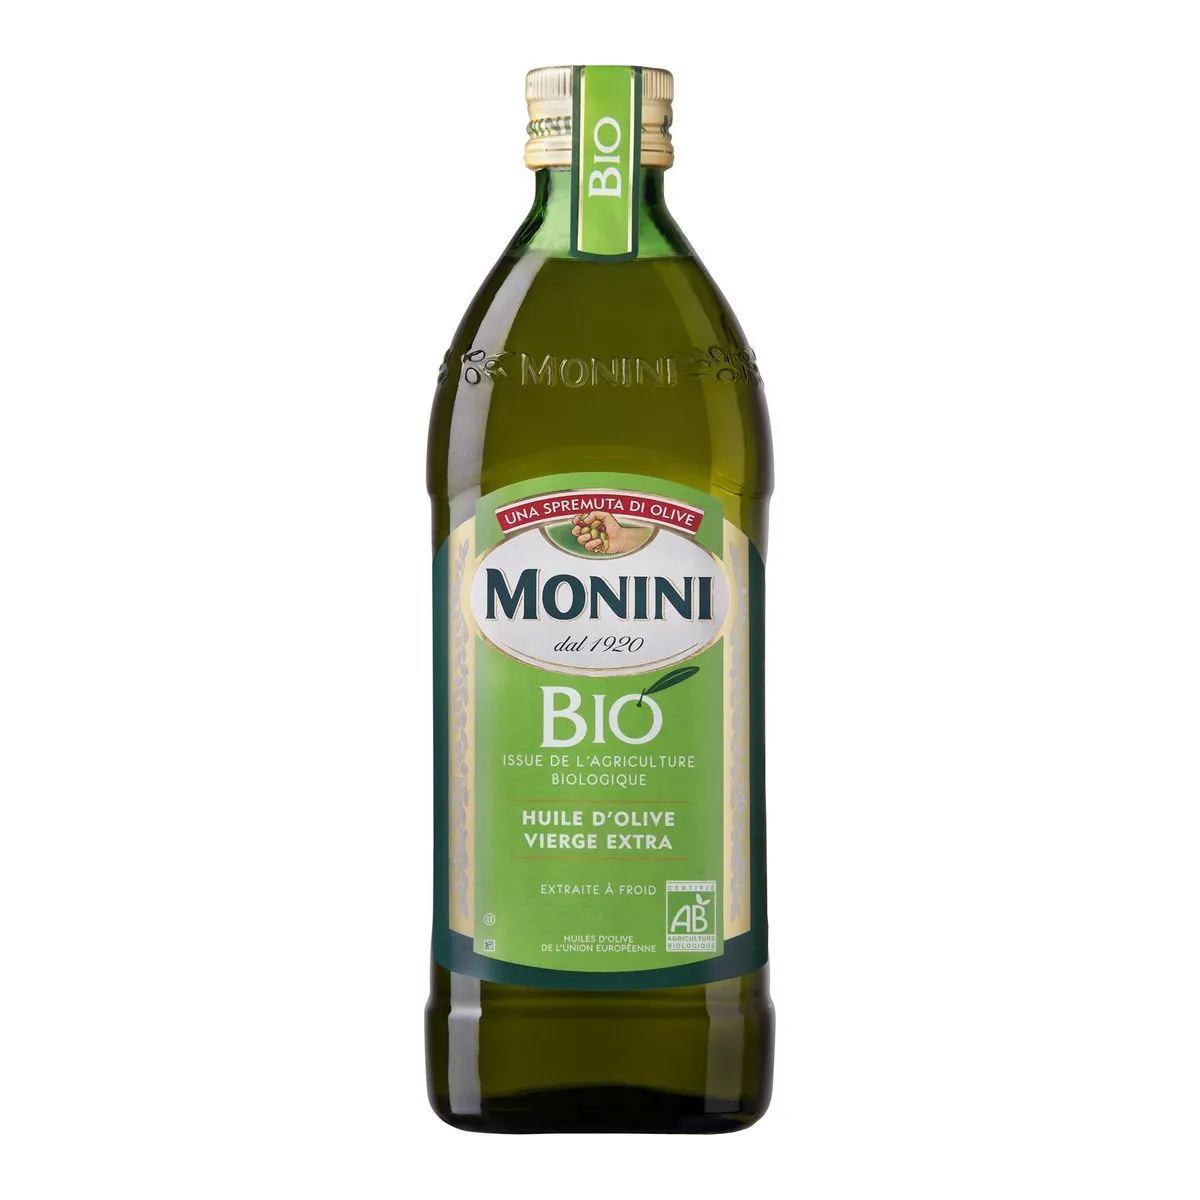 huile d'olive vierge extra bio monini